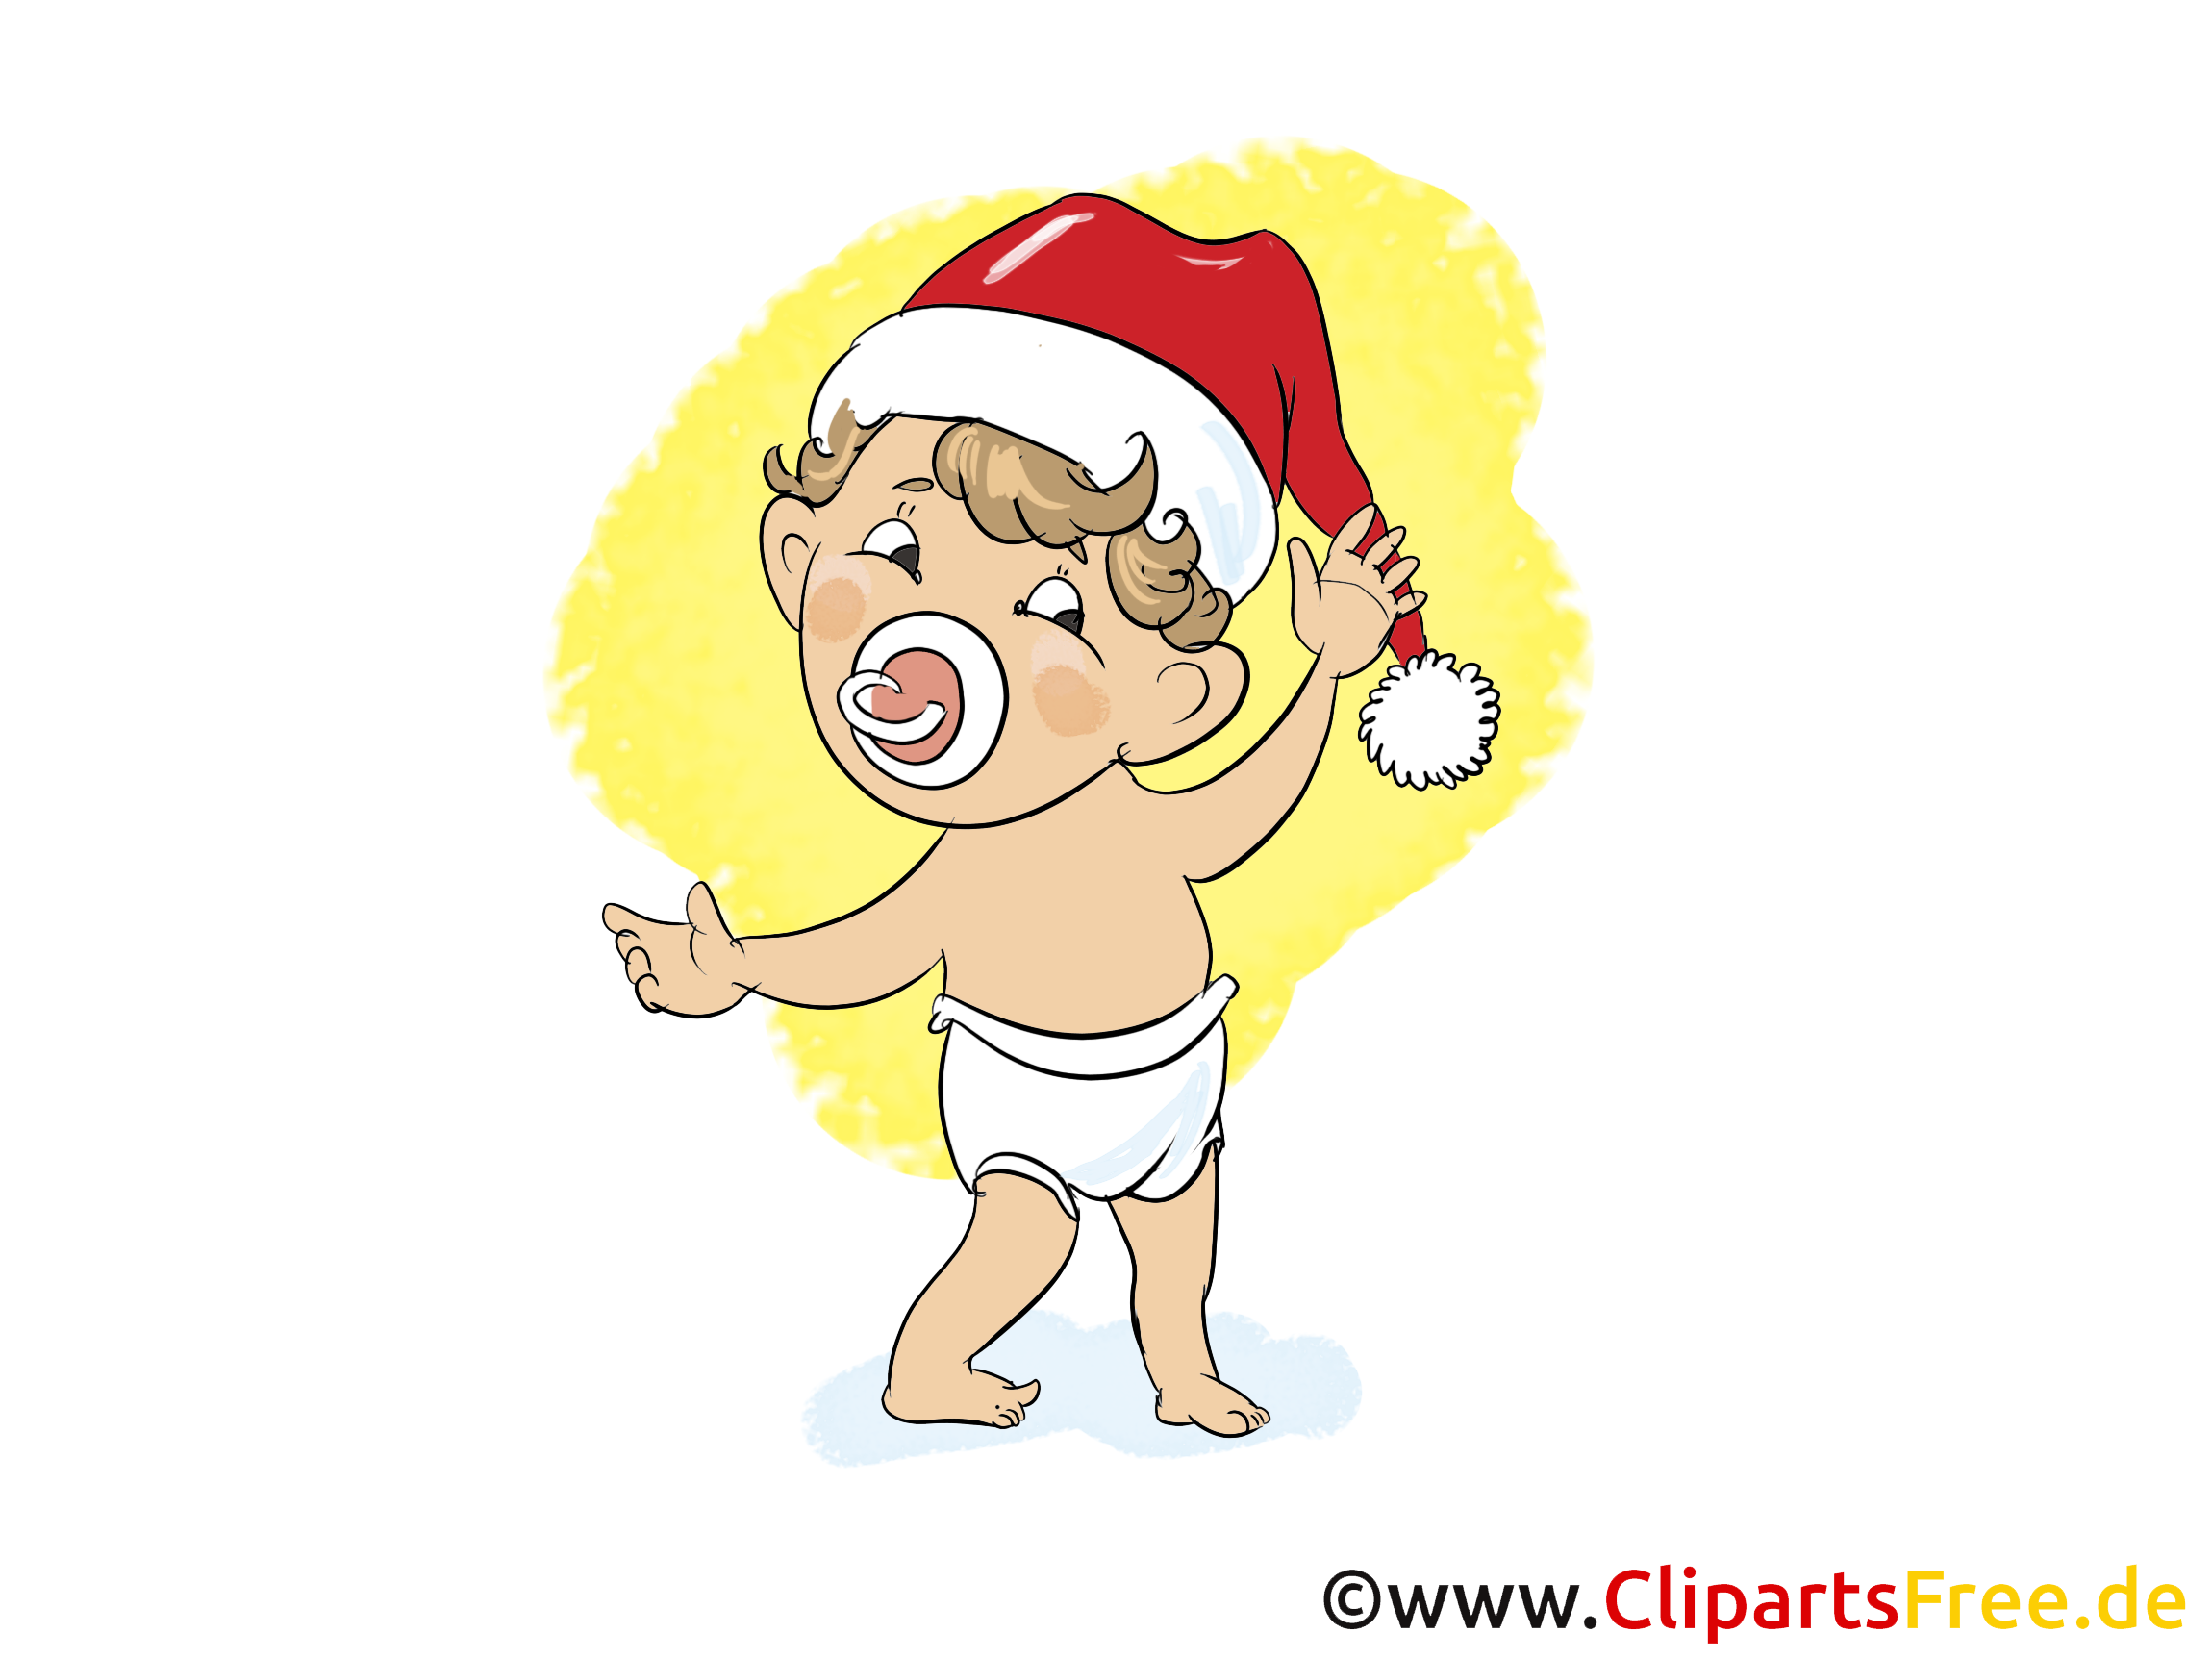 clipart weihnachten download kostenlos - photo #9